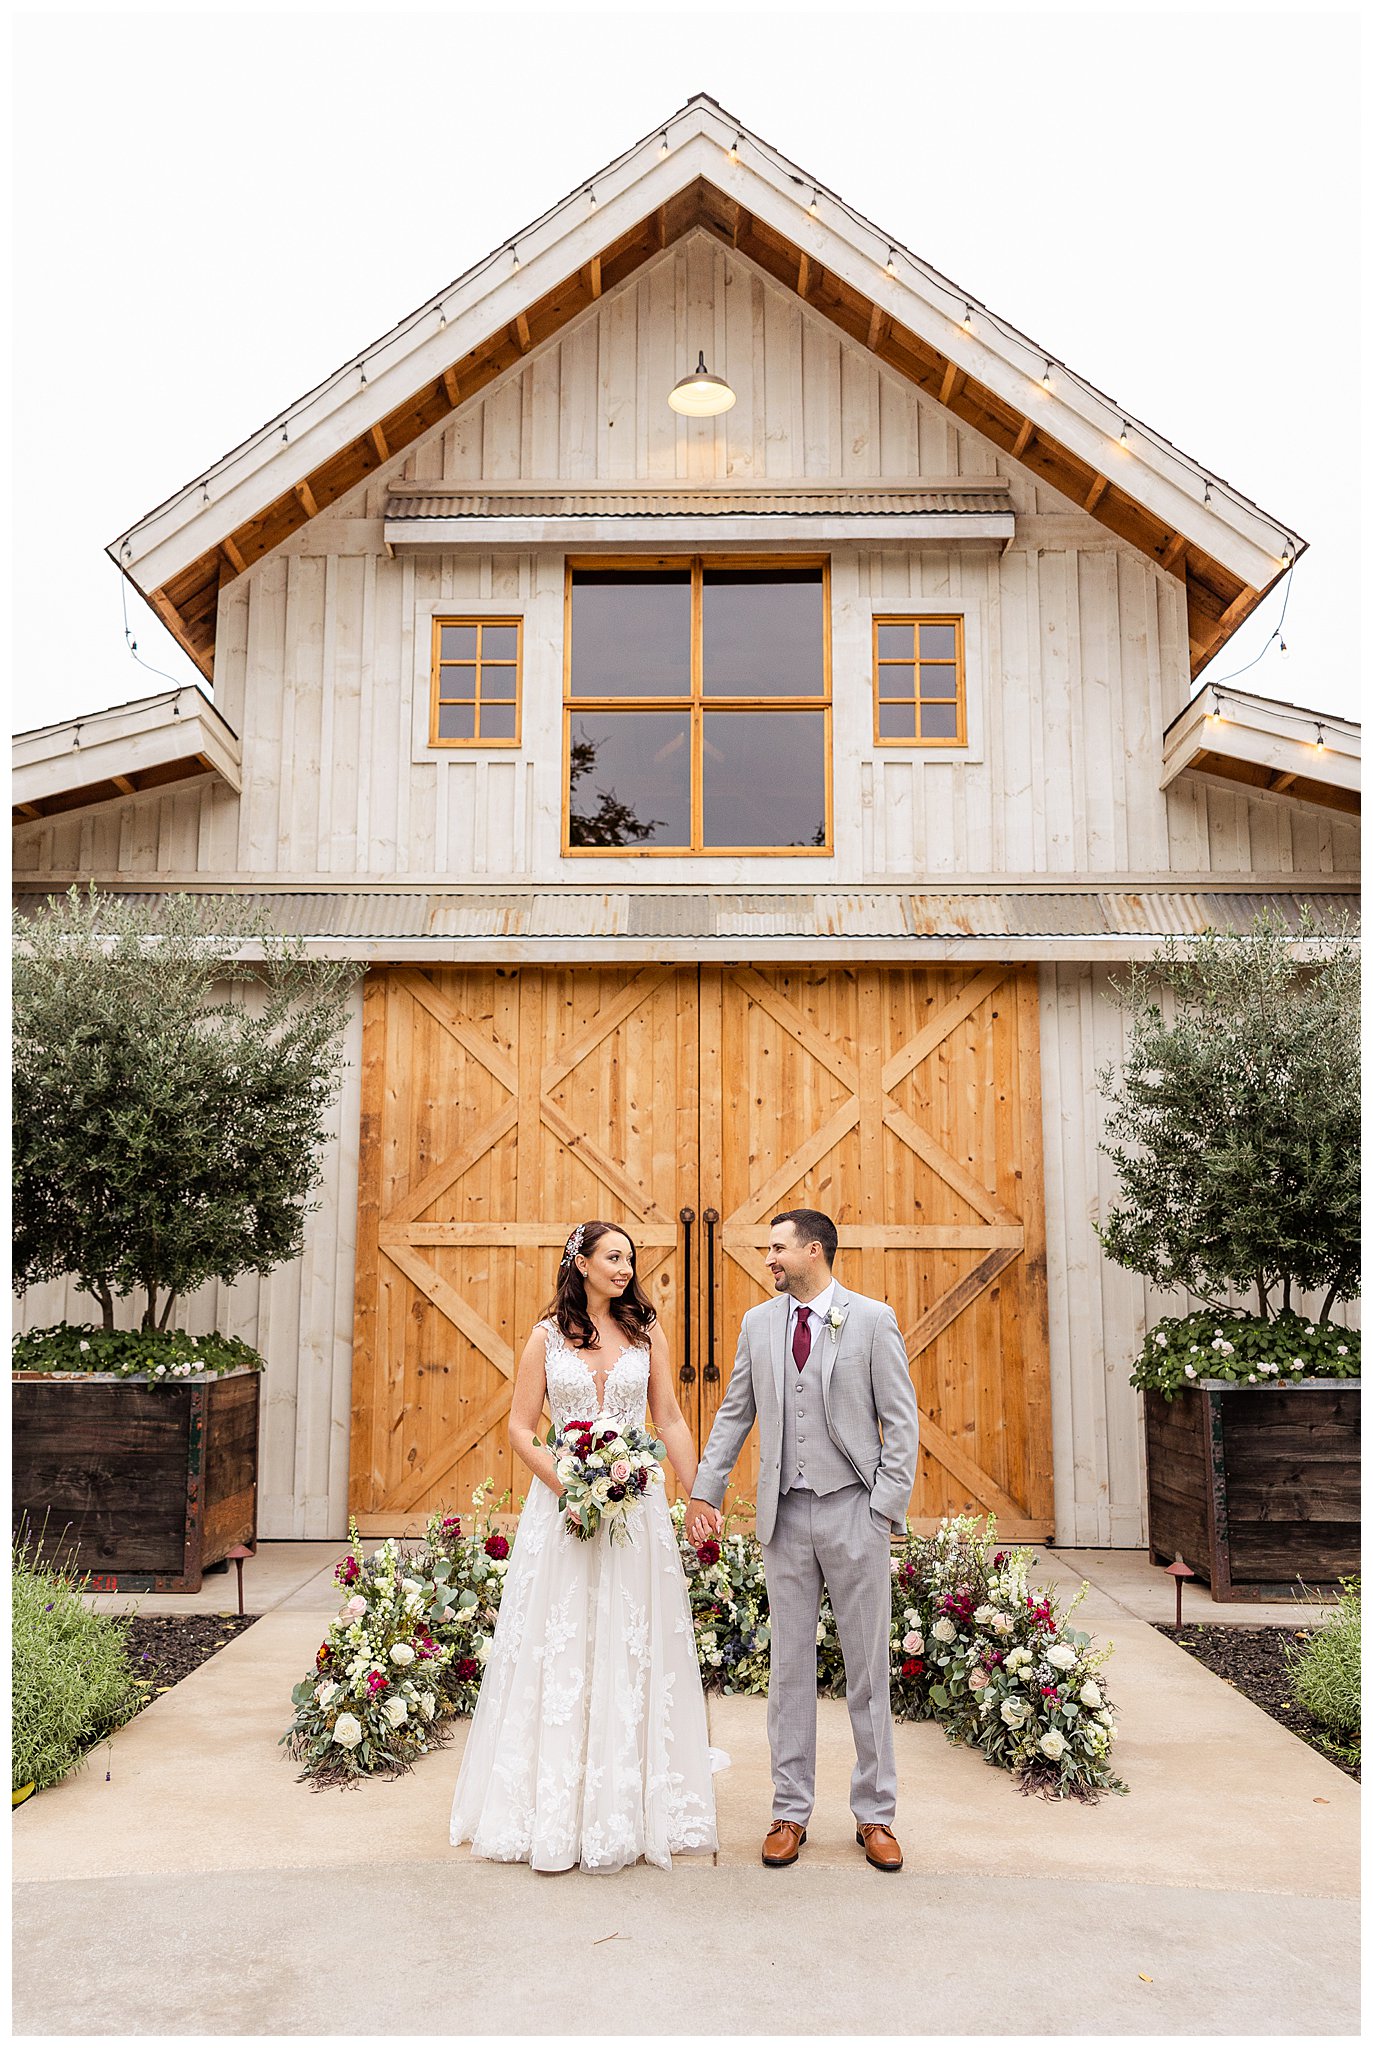 The Barn at Pheasant Trail Ranch Wedding Chico CA November | Megan + Thomas